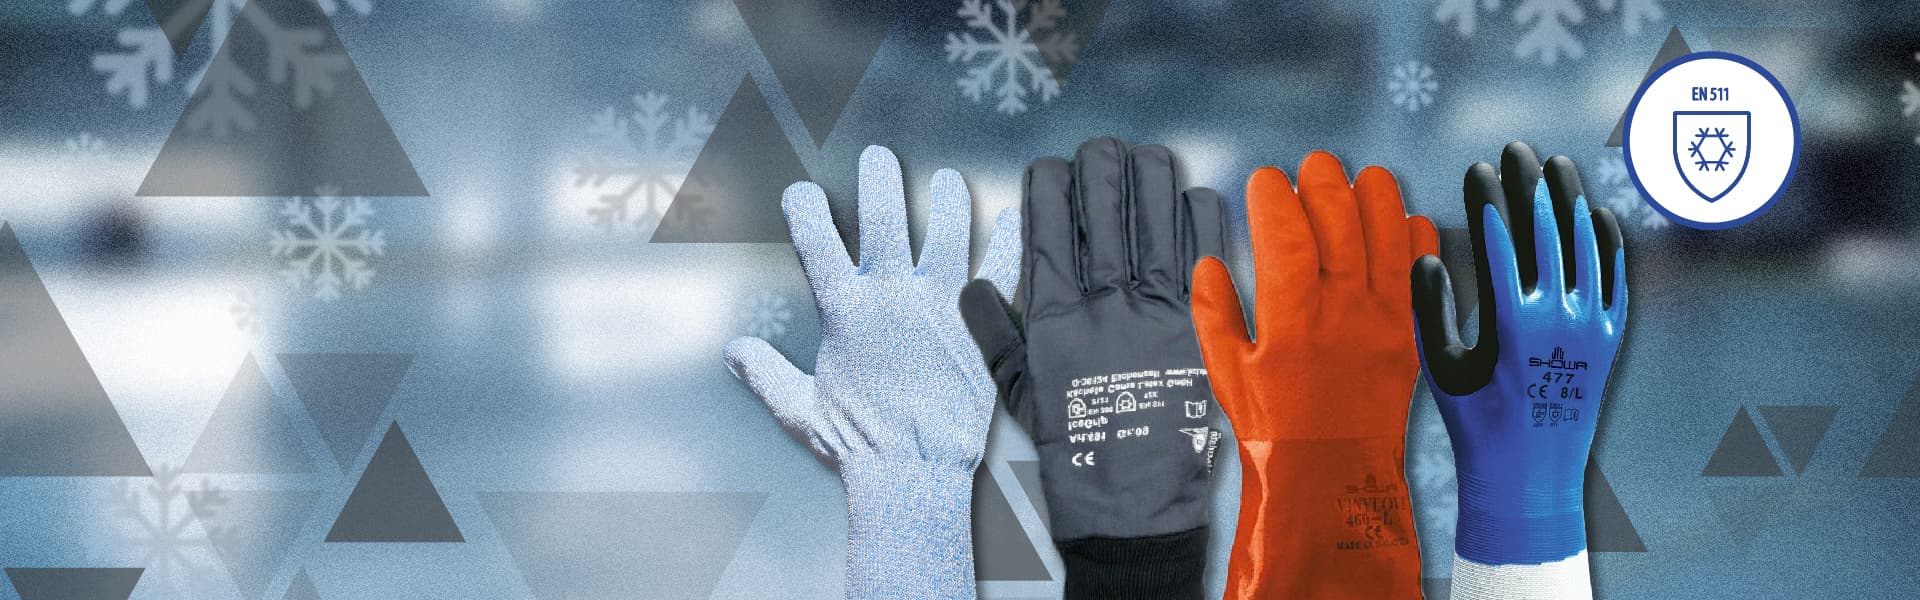 Los mejores guantes de frío para trabajar ¿Cuál elegir?